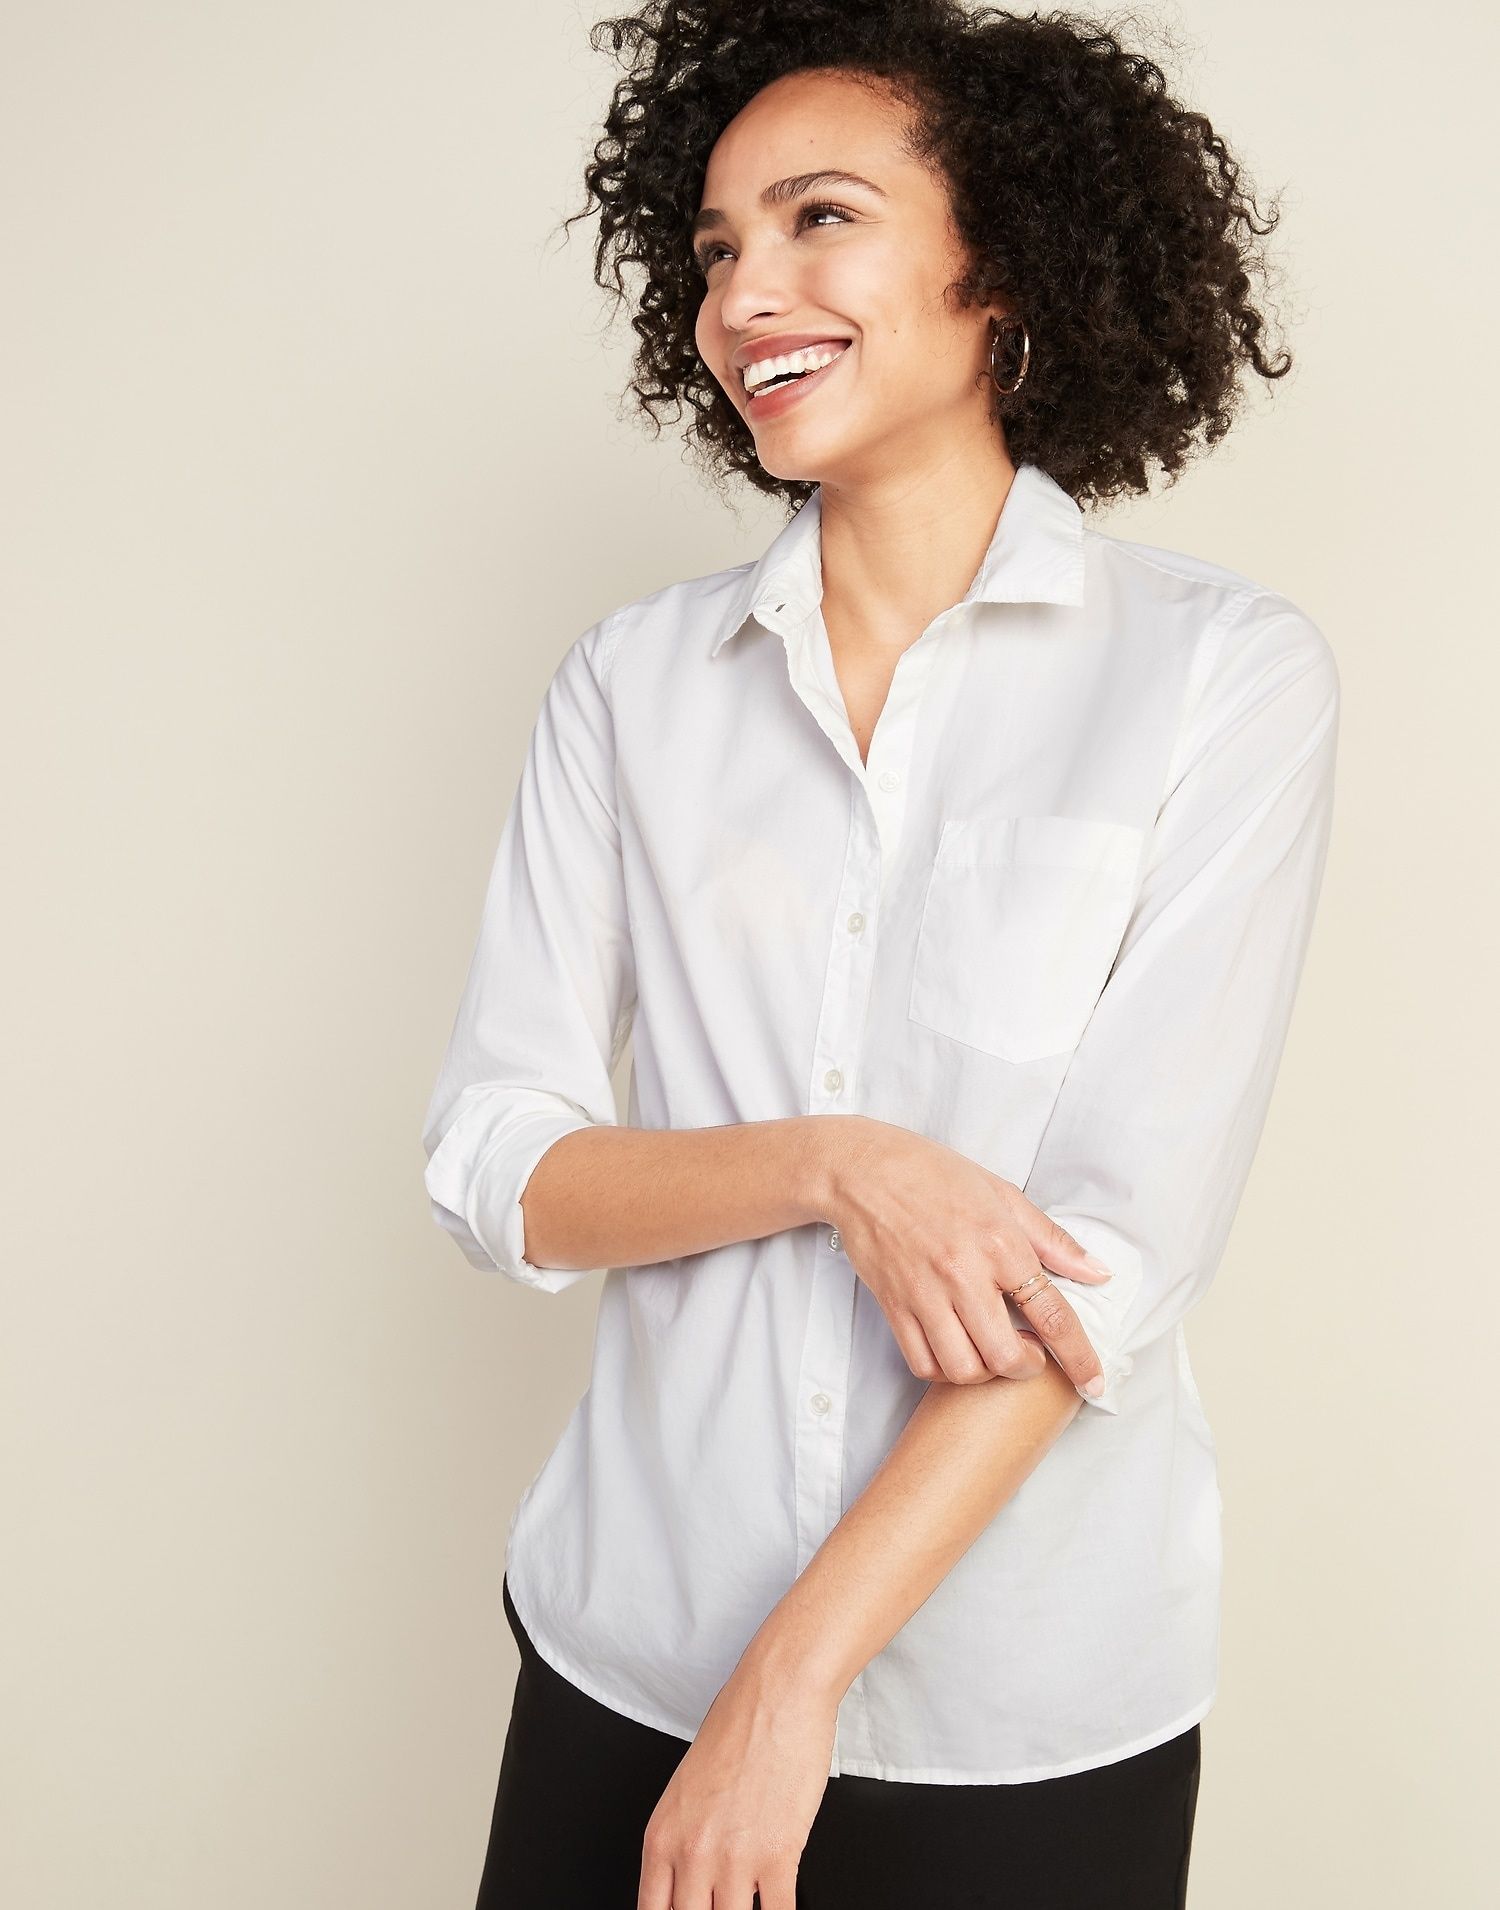 3 Ways To Wear A Button-Down Shirt - xoNecole